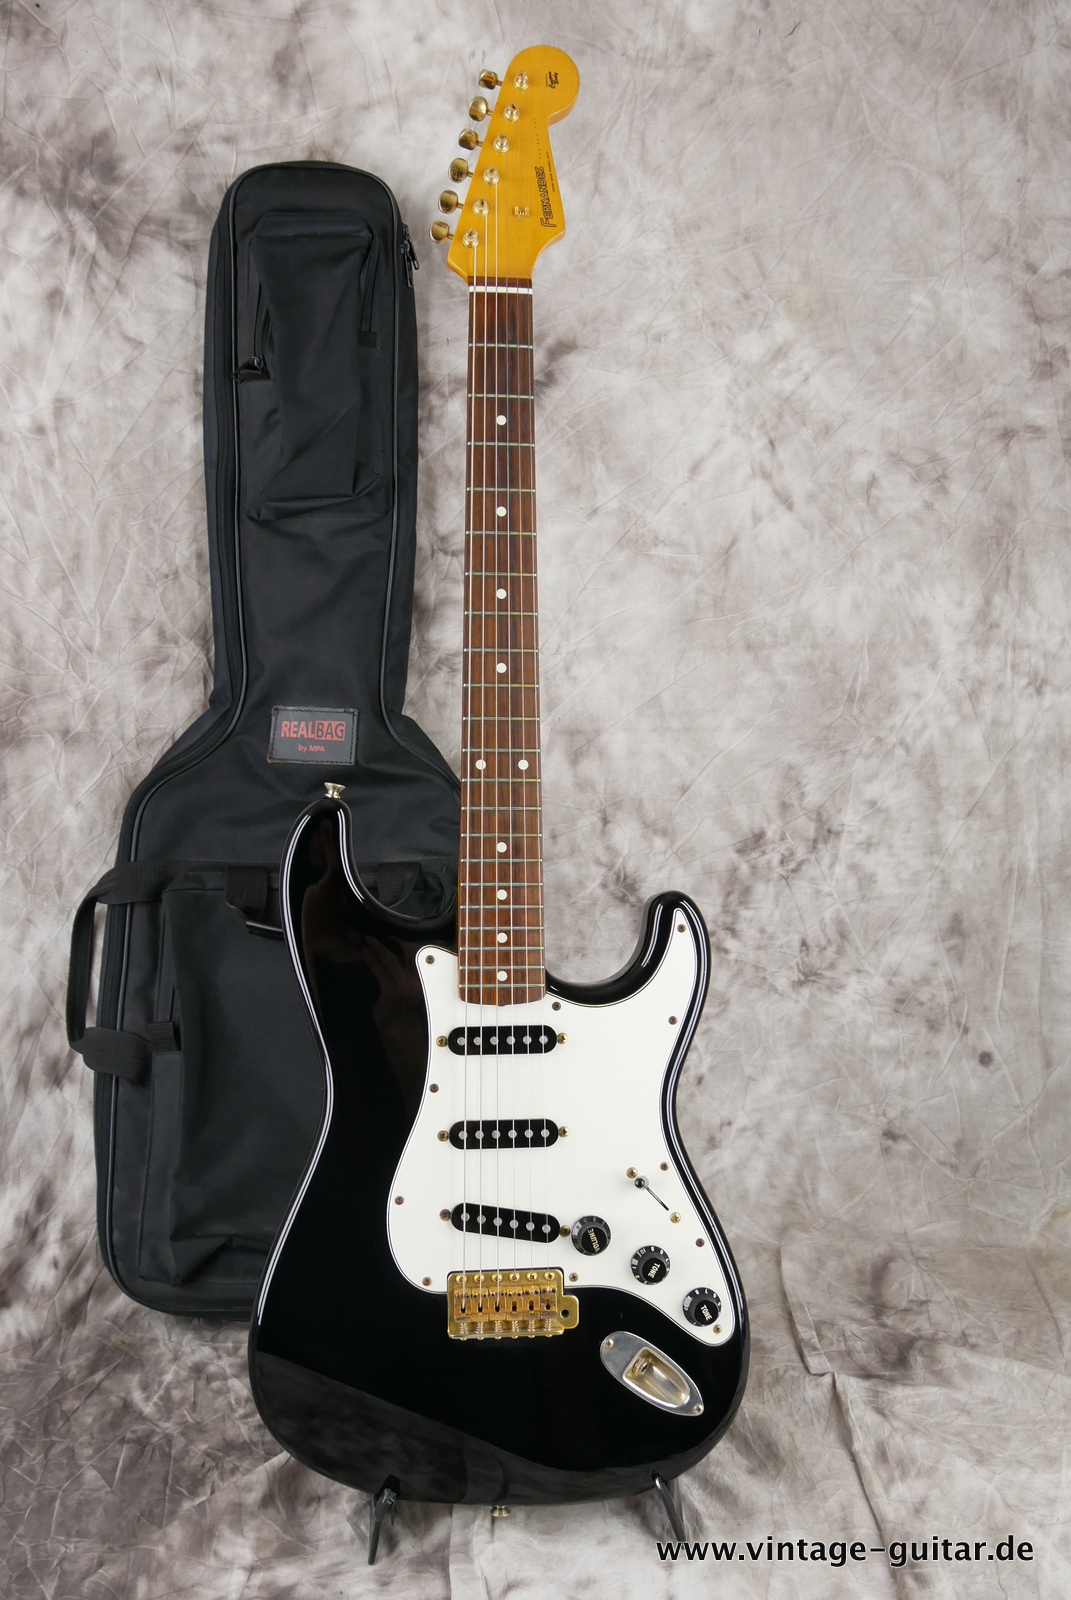 Fernandes-Stratocaster-Style-The-Revival-1980s-black-014.JPG